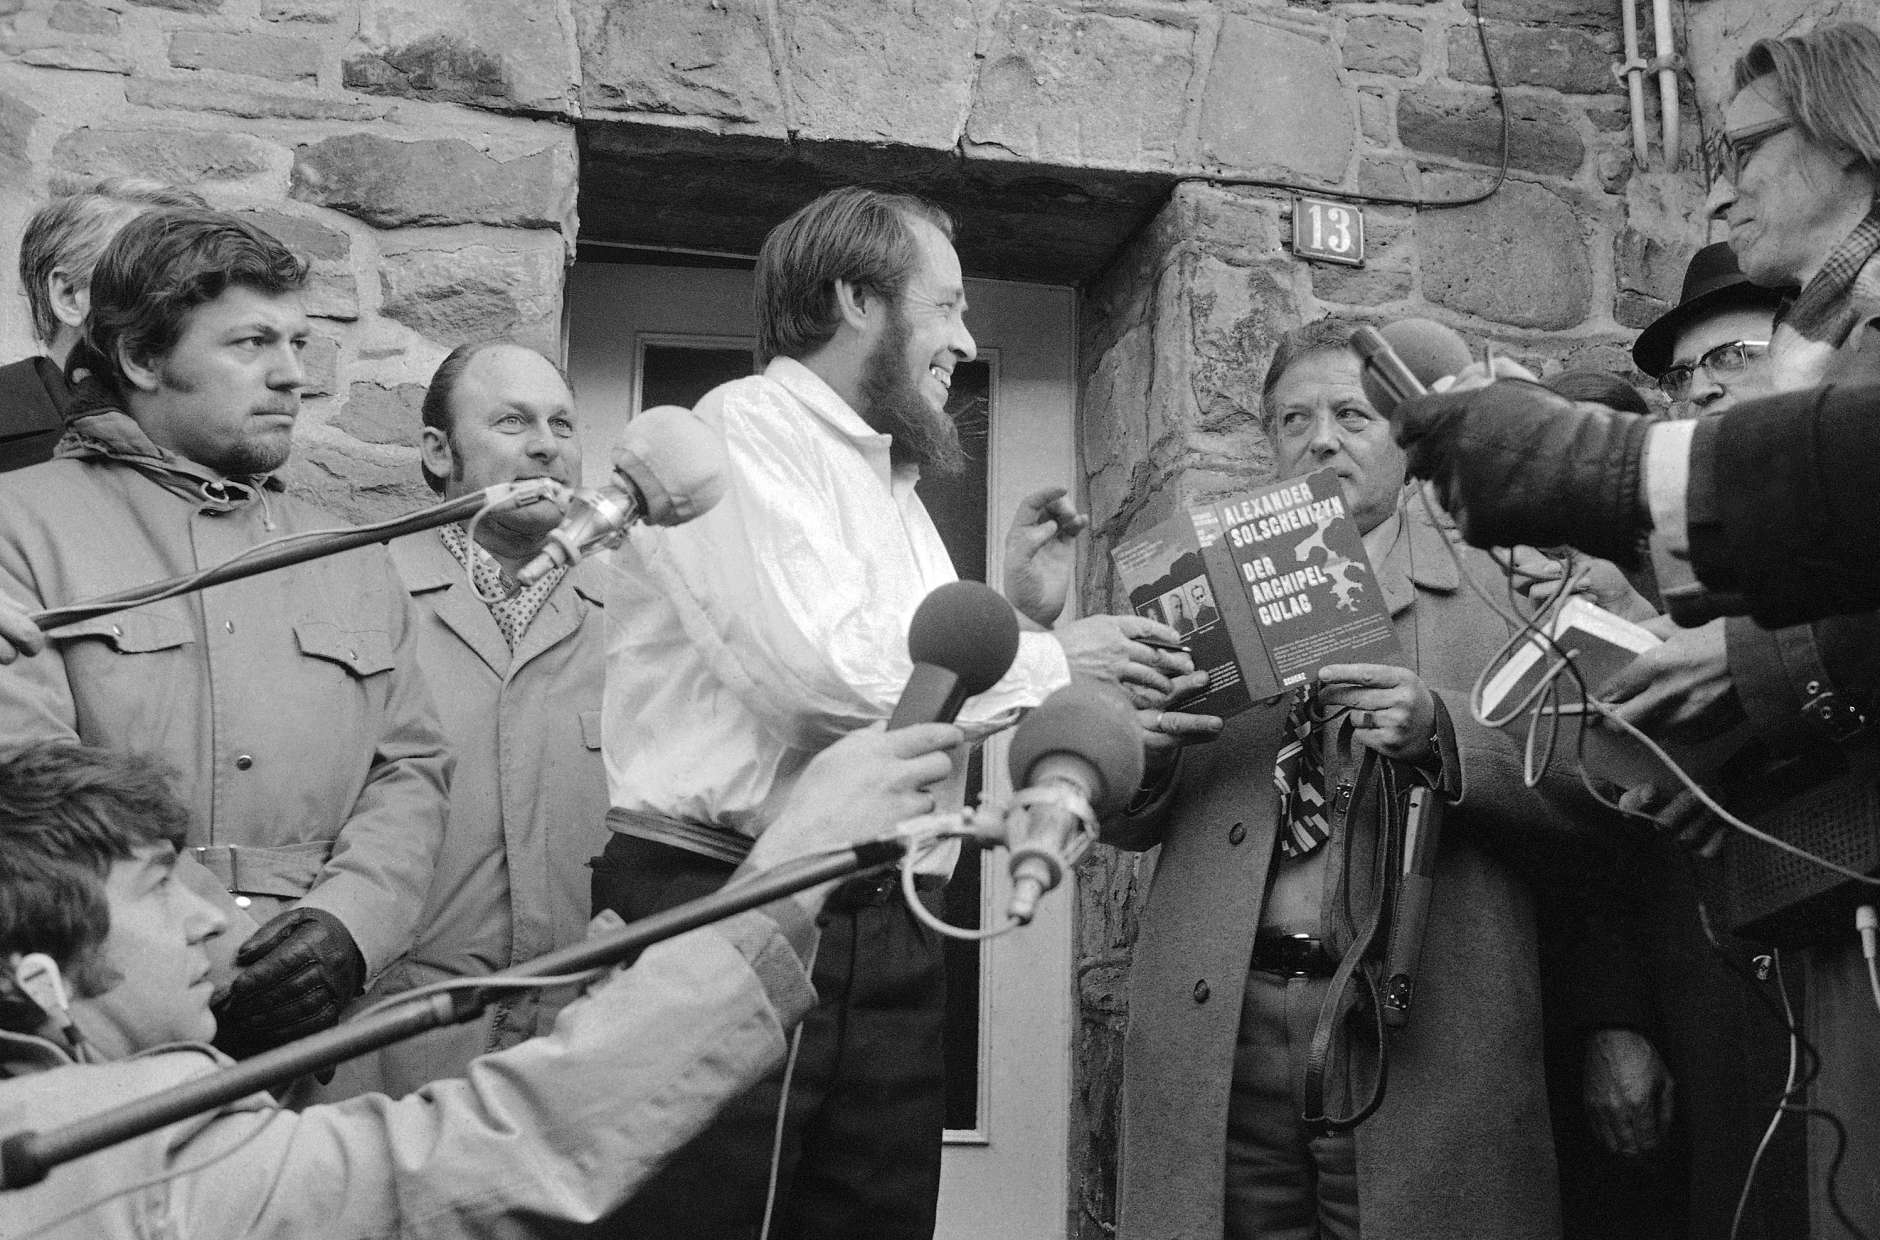 Expelled Soviet author and Nobel Prize winner Alexander Solzhenitsyn grabs for the book The Gulag Archipelago in Langenbroich on Feb. 14, 1974 when journalists and onlookers asked him to sign his book, which he had in hand in this Western country for the first time. (AP Photo/Pro)